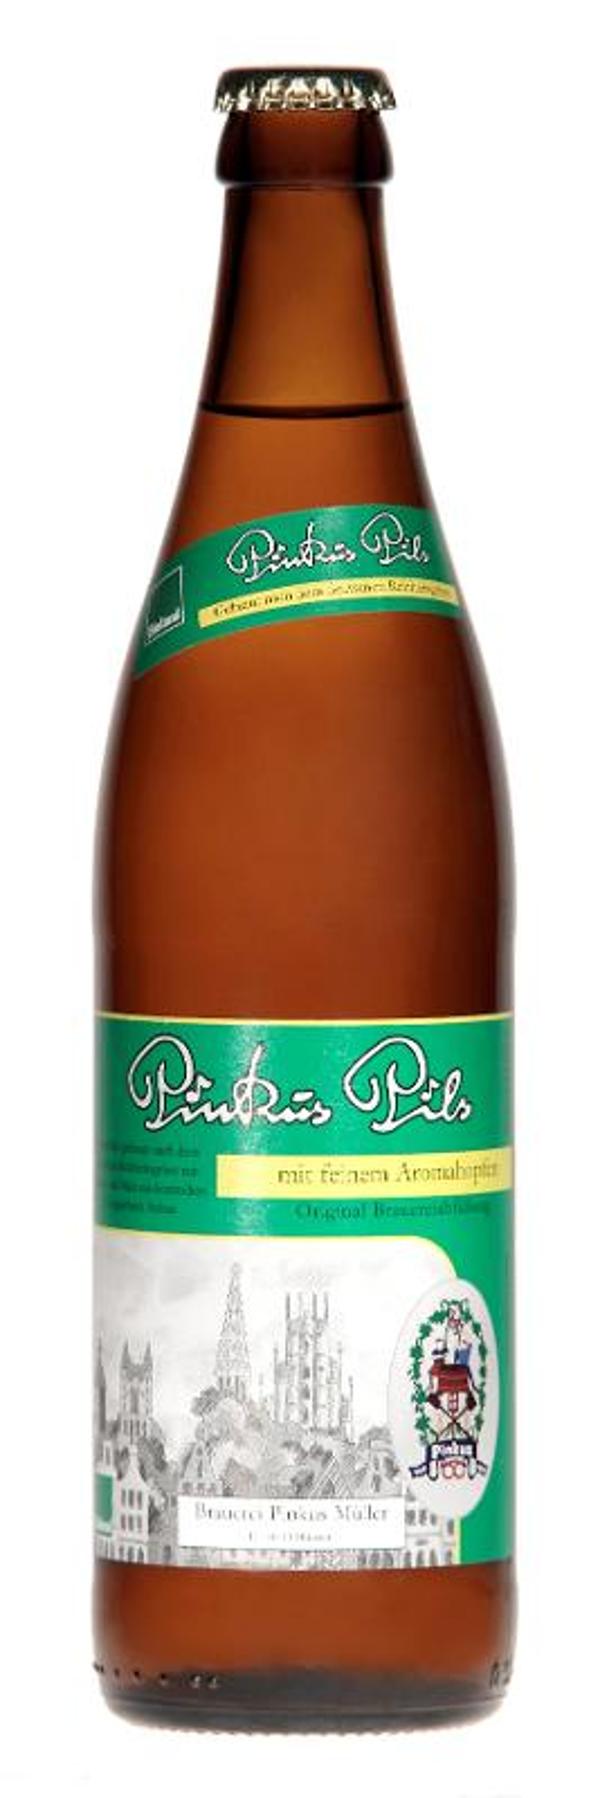 Produktfoto zu Bier Pils 0,5 l Pinkus Müller